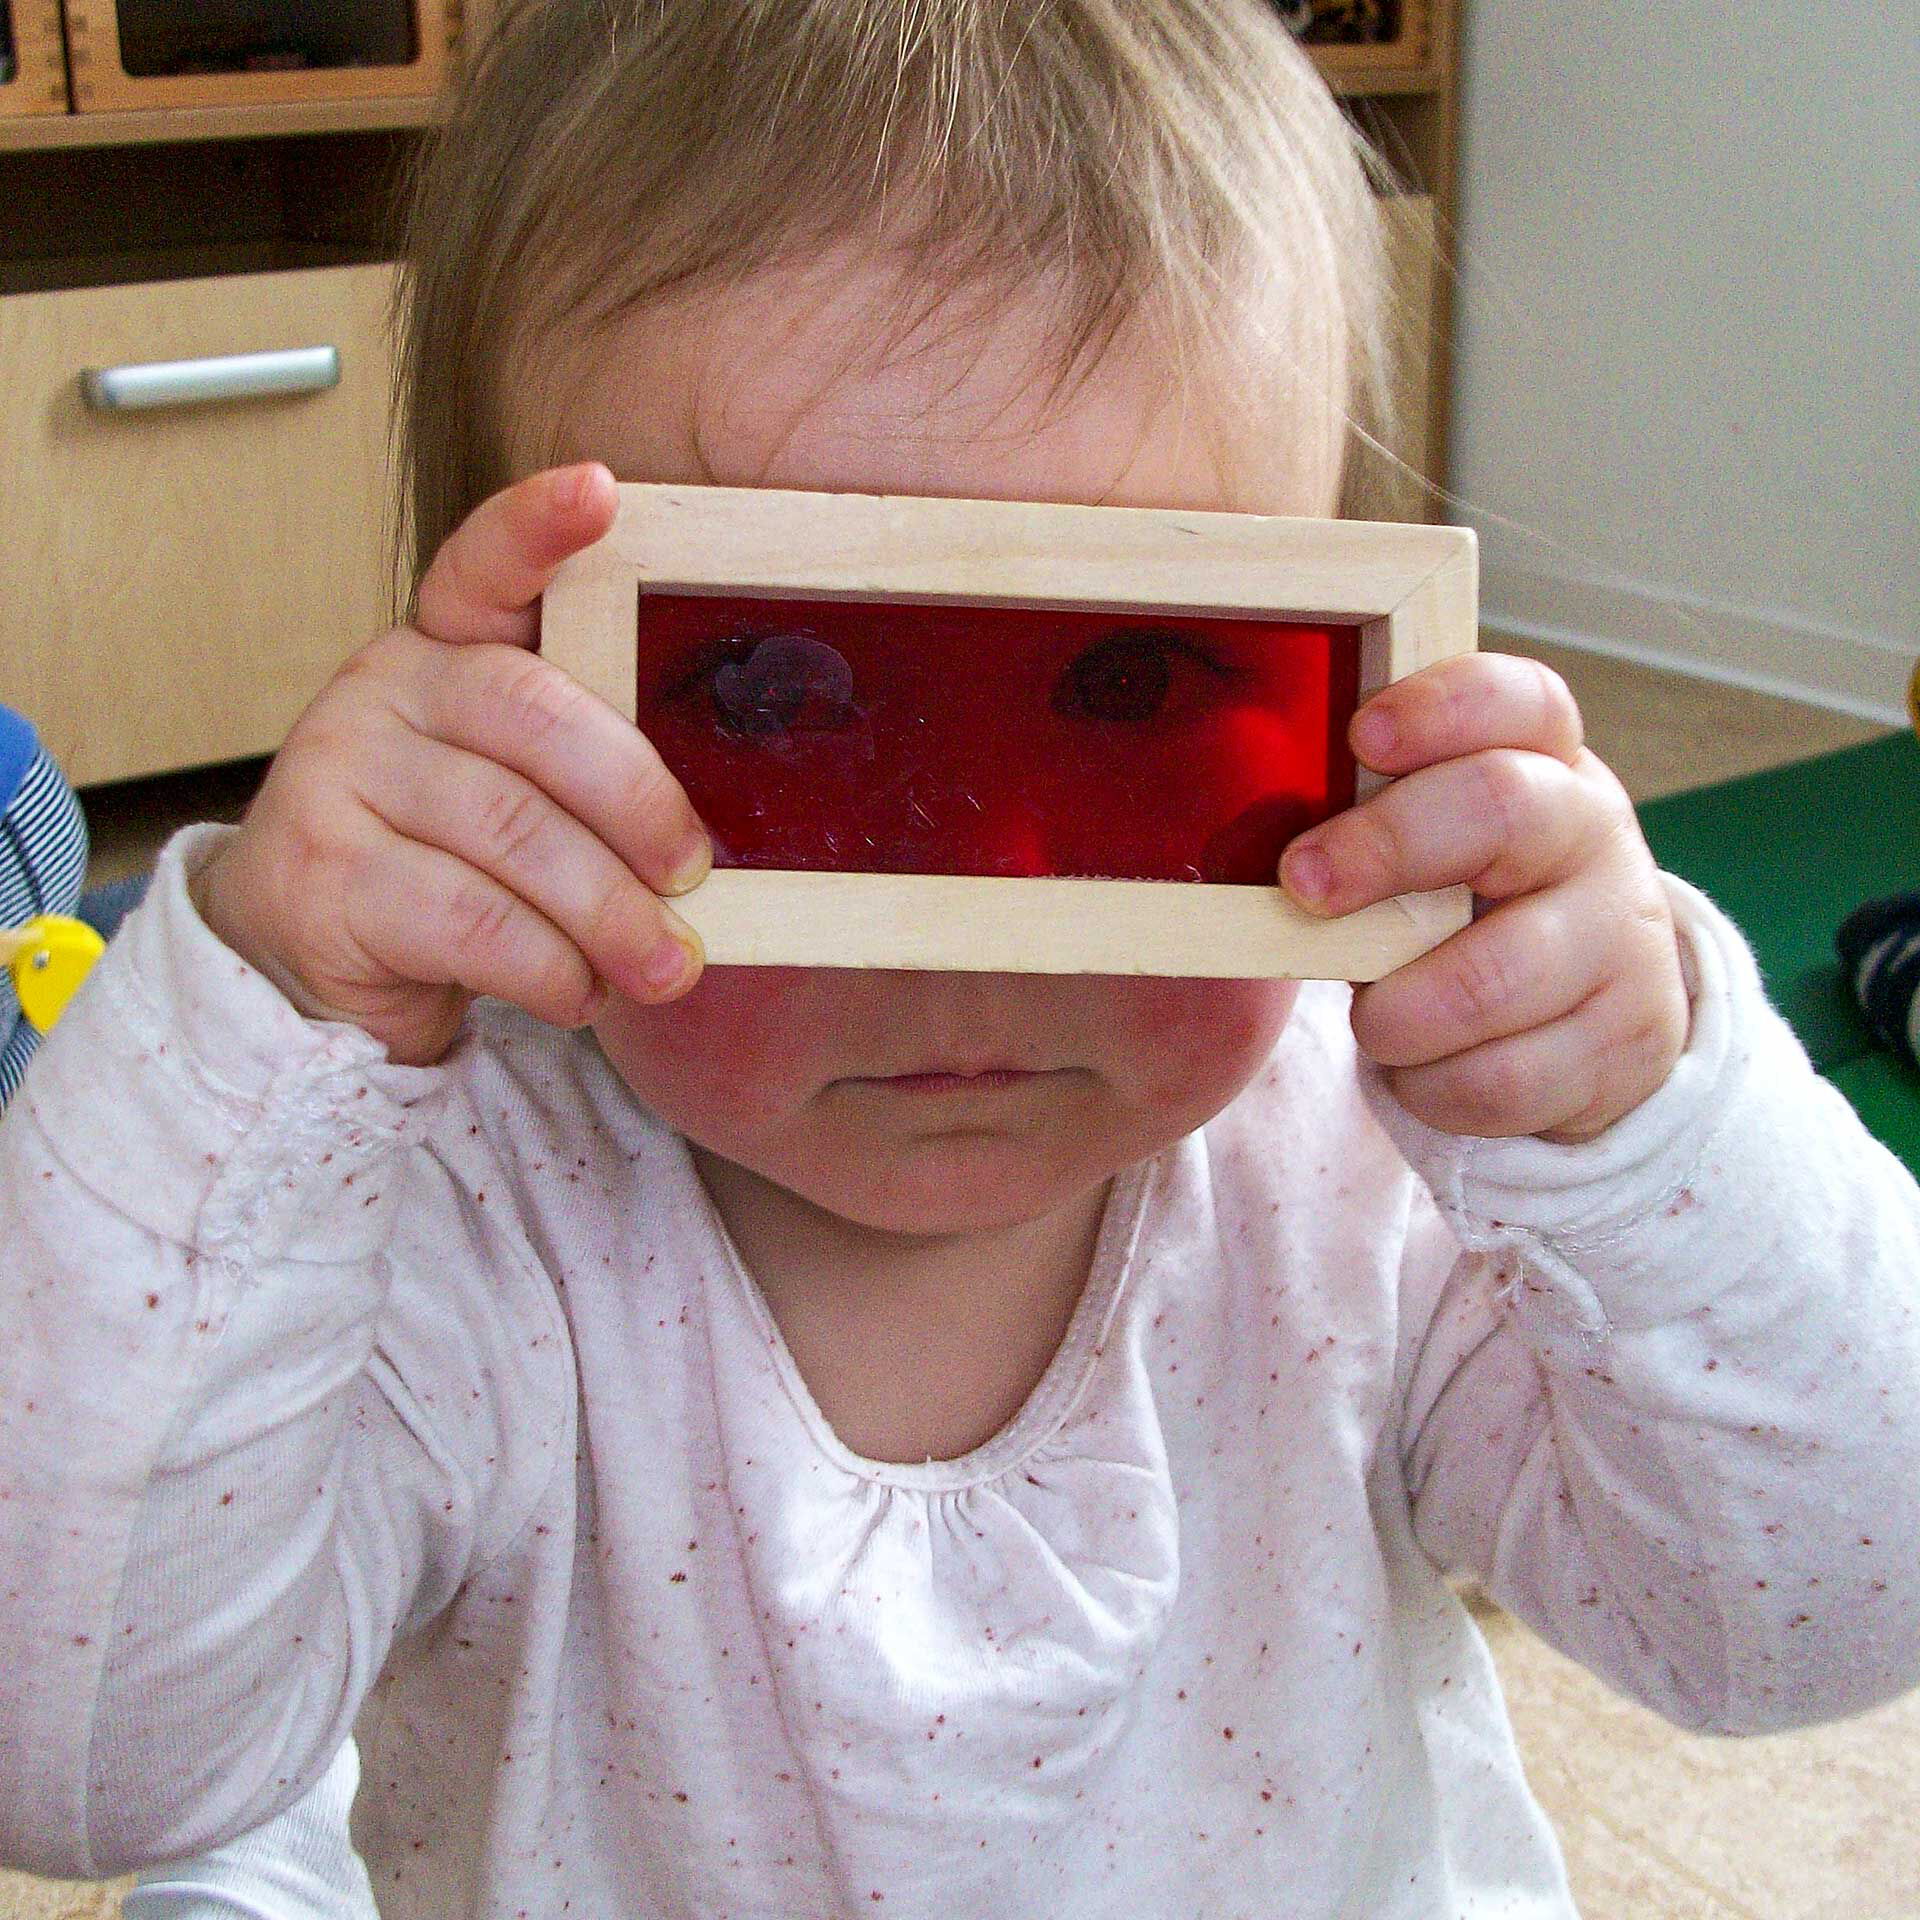 Ein Kleinkind hält sich ein Baustein vor die Augen. In der Mitte ist der Holzbaustein mit einer roten Folie durchsichtig.